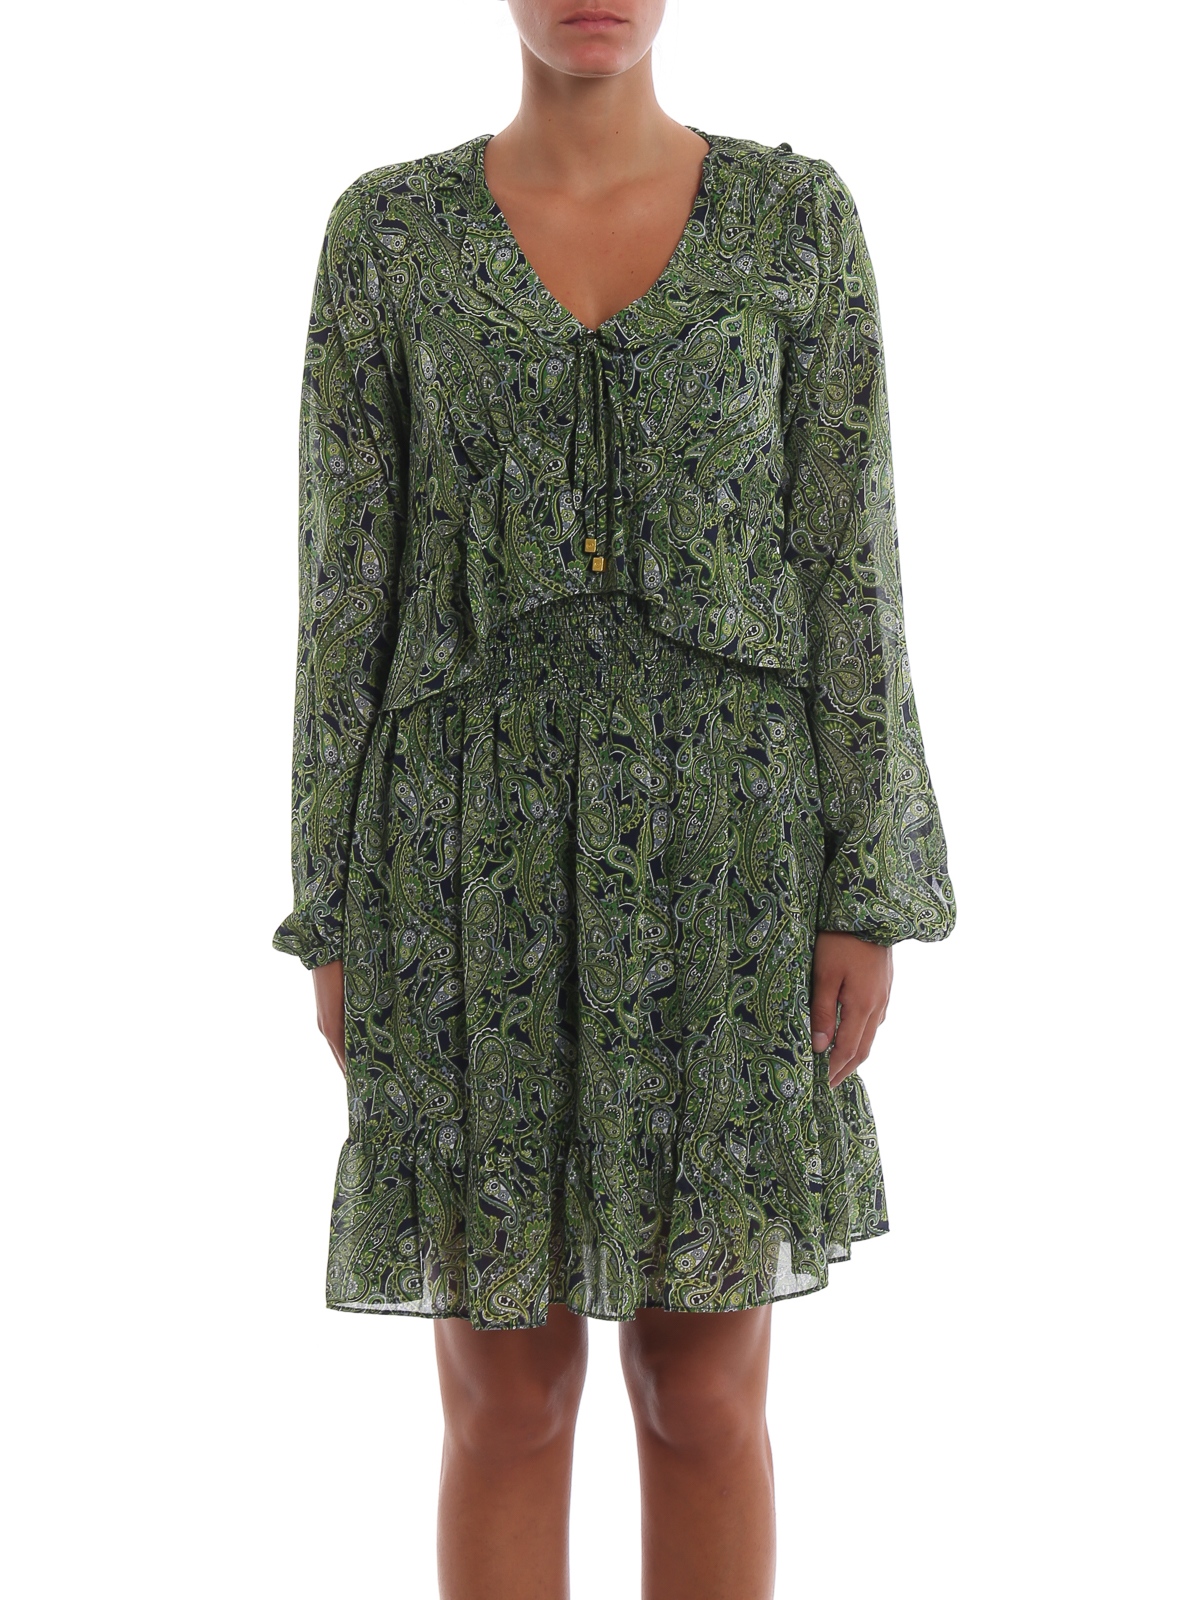 MICHAEL KORS Pleated dress in green  Breuninger